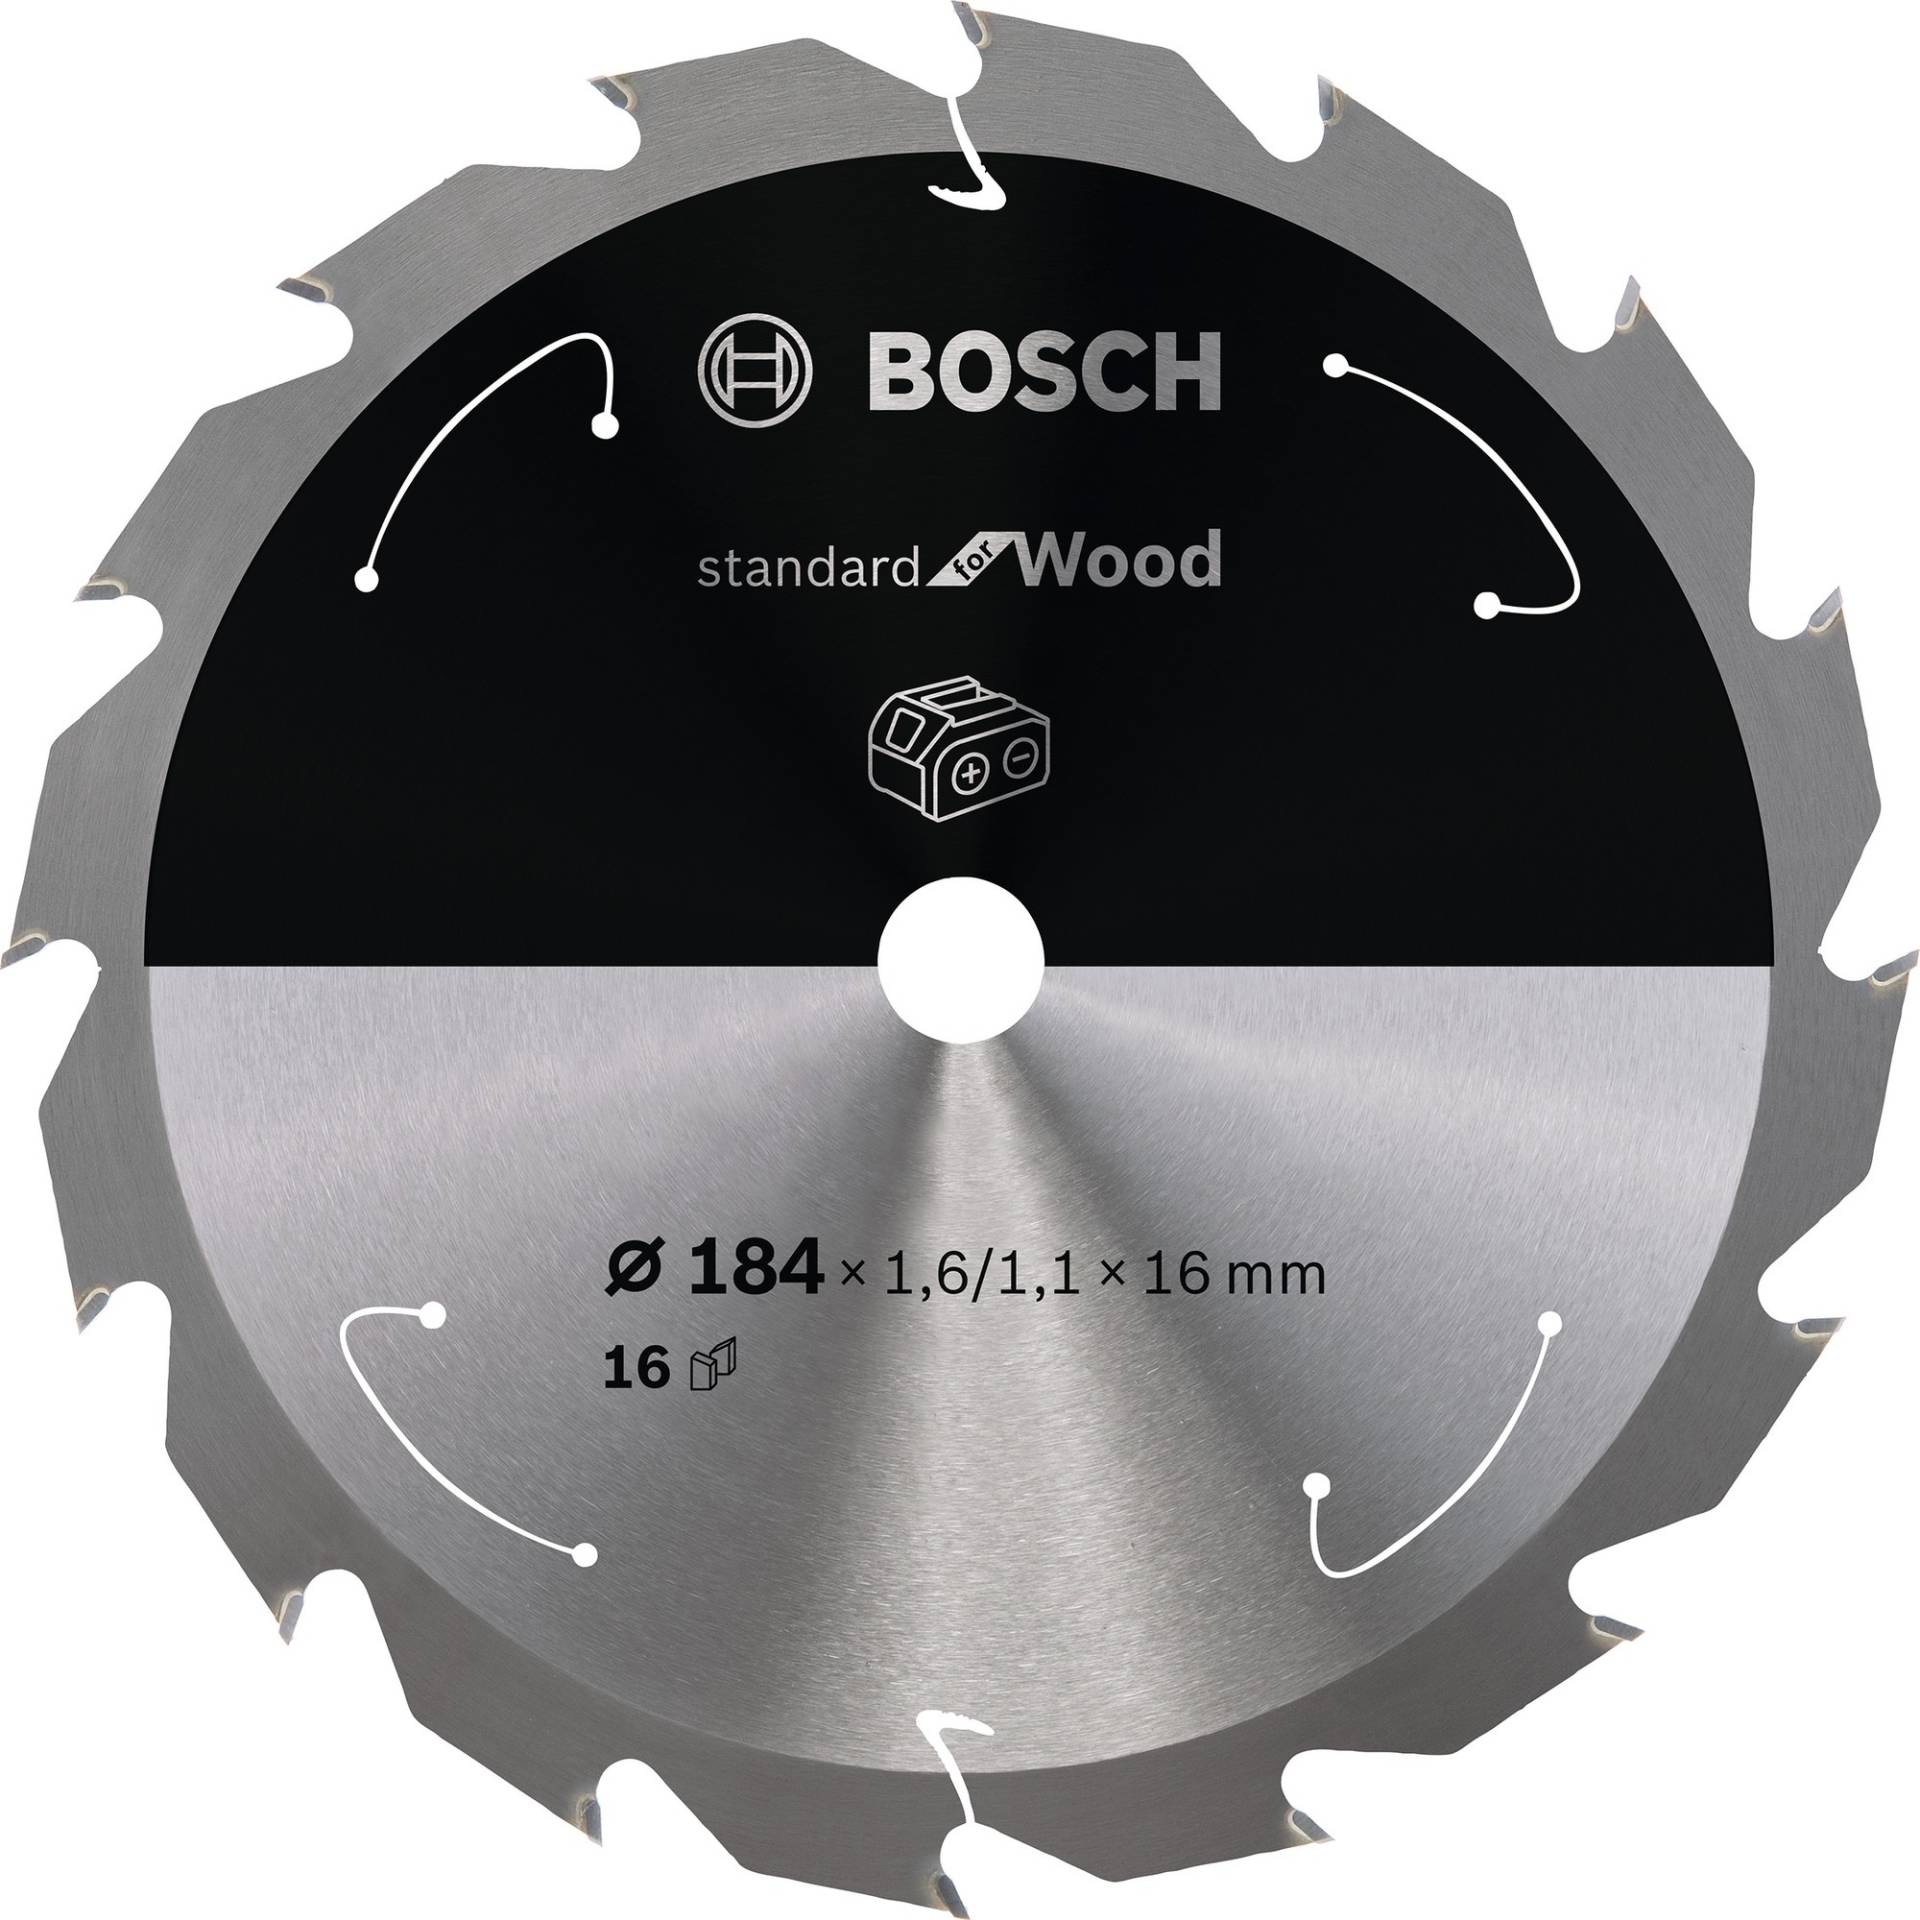 Kreissägeblatt Standard for Wood, Ø 184mm, 16Z von Bosch